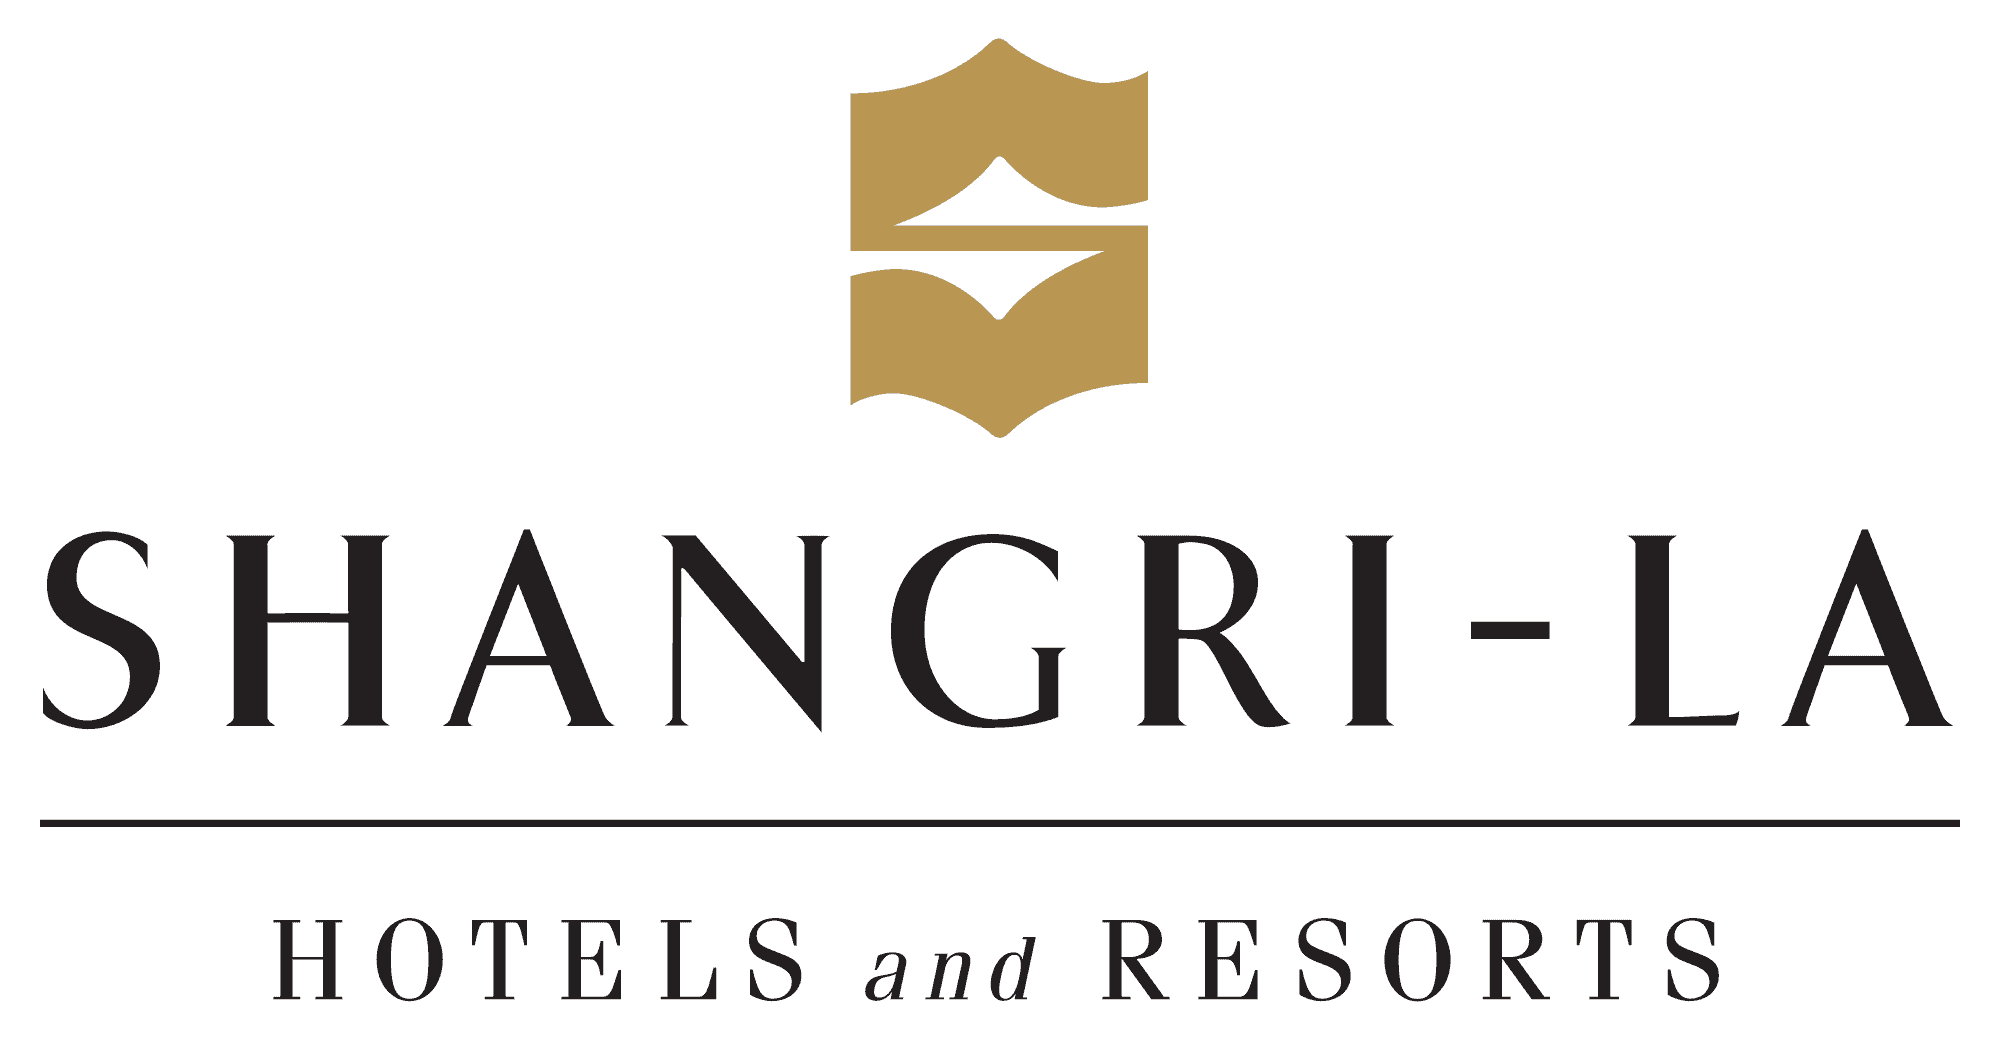 Shangri-la Hotels & Resorts